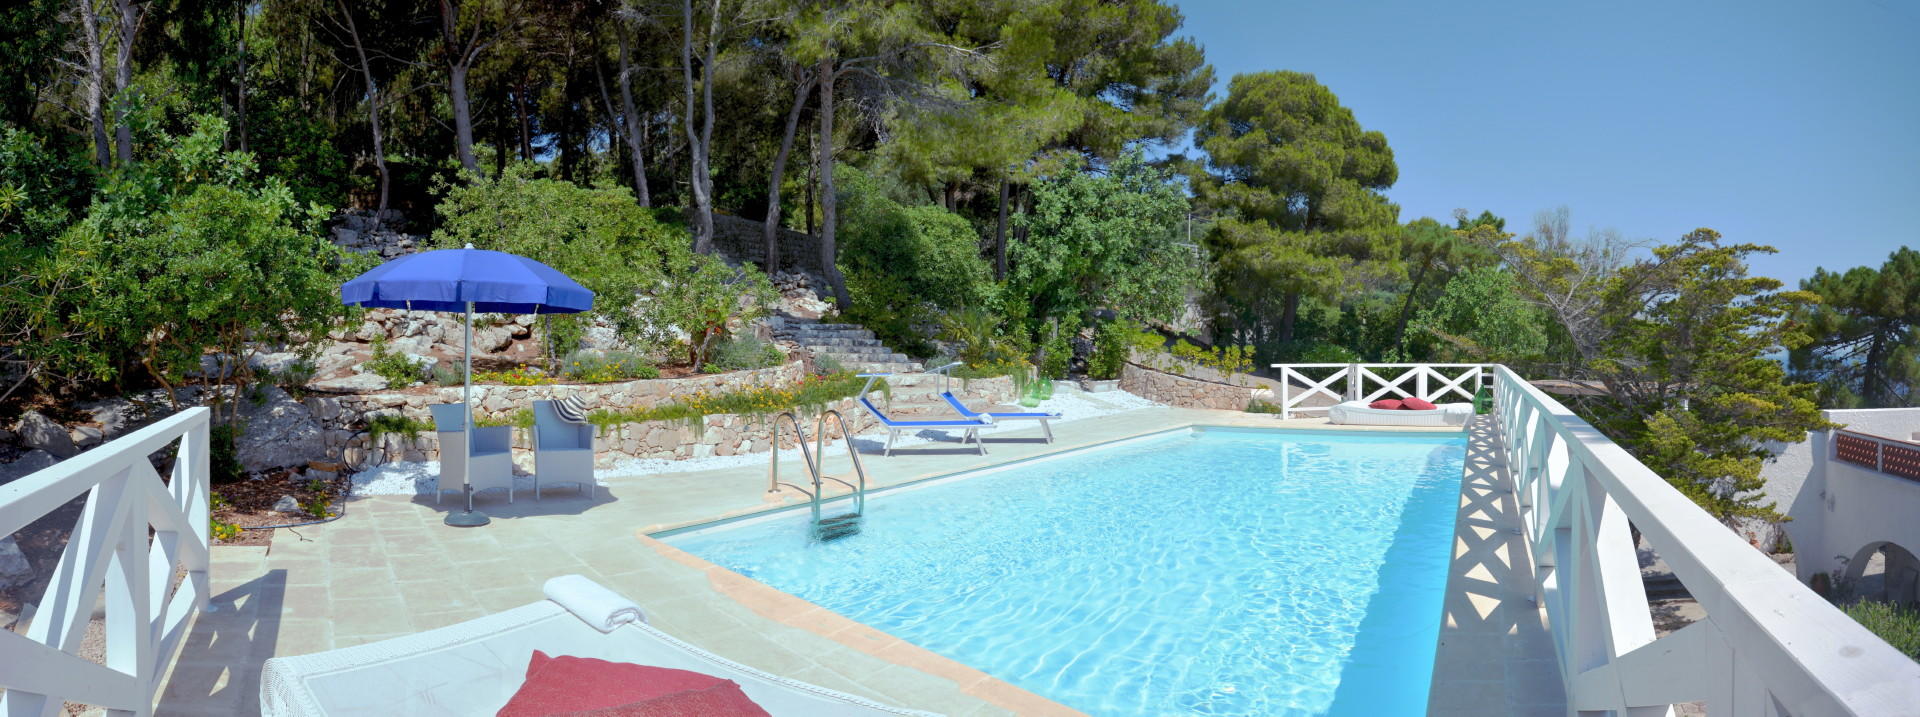 Swimming pool area (12)